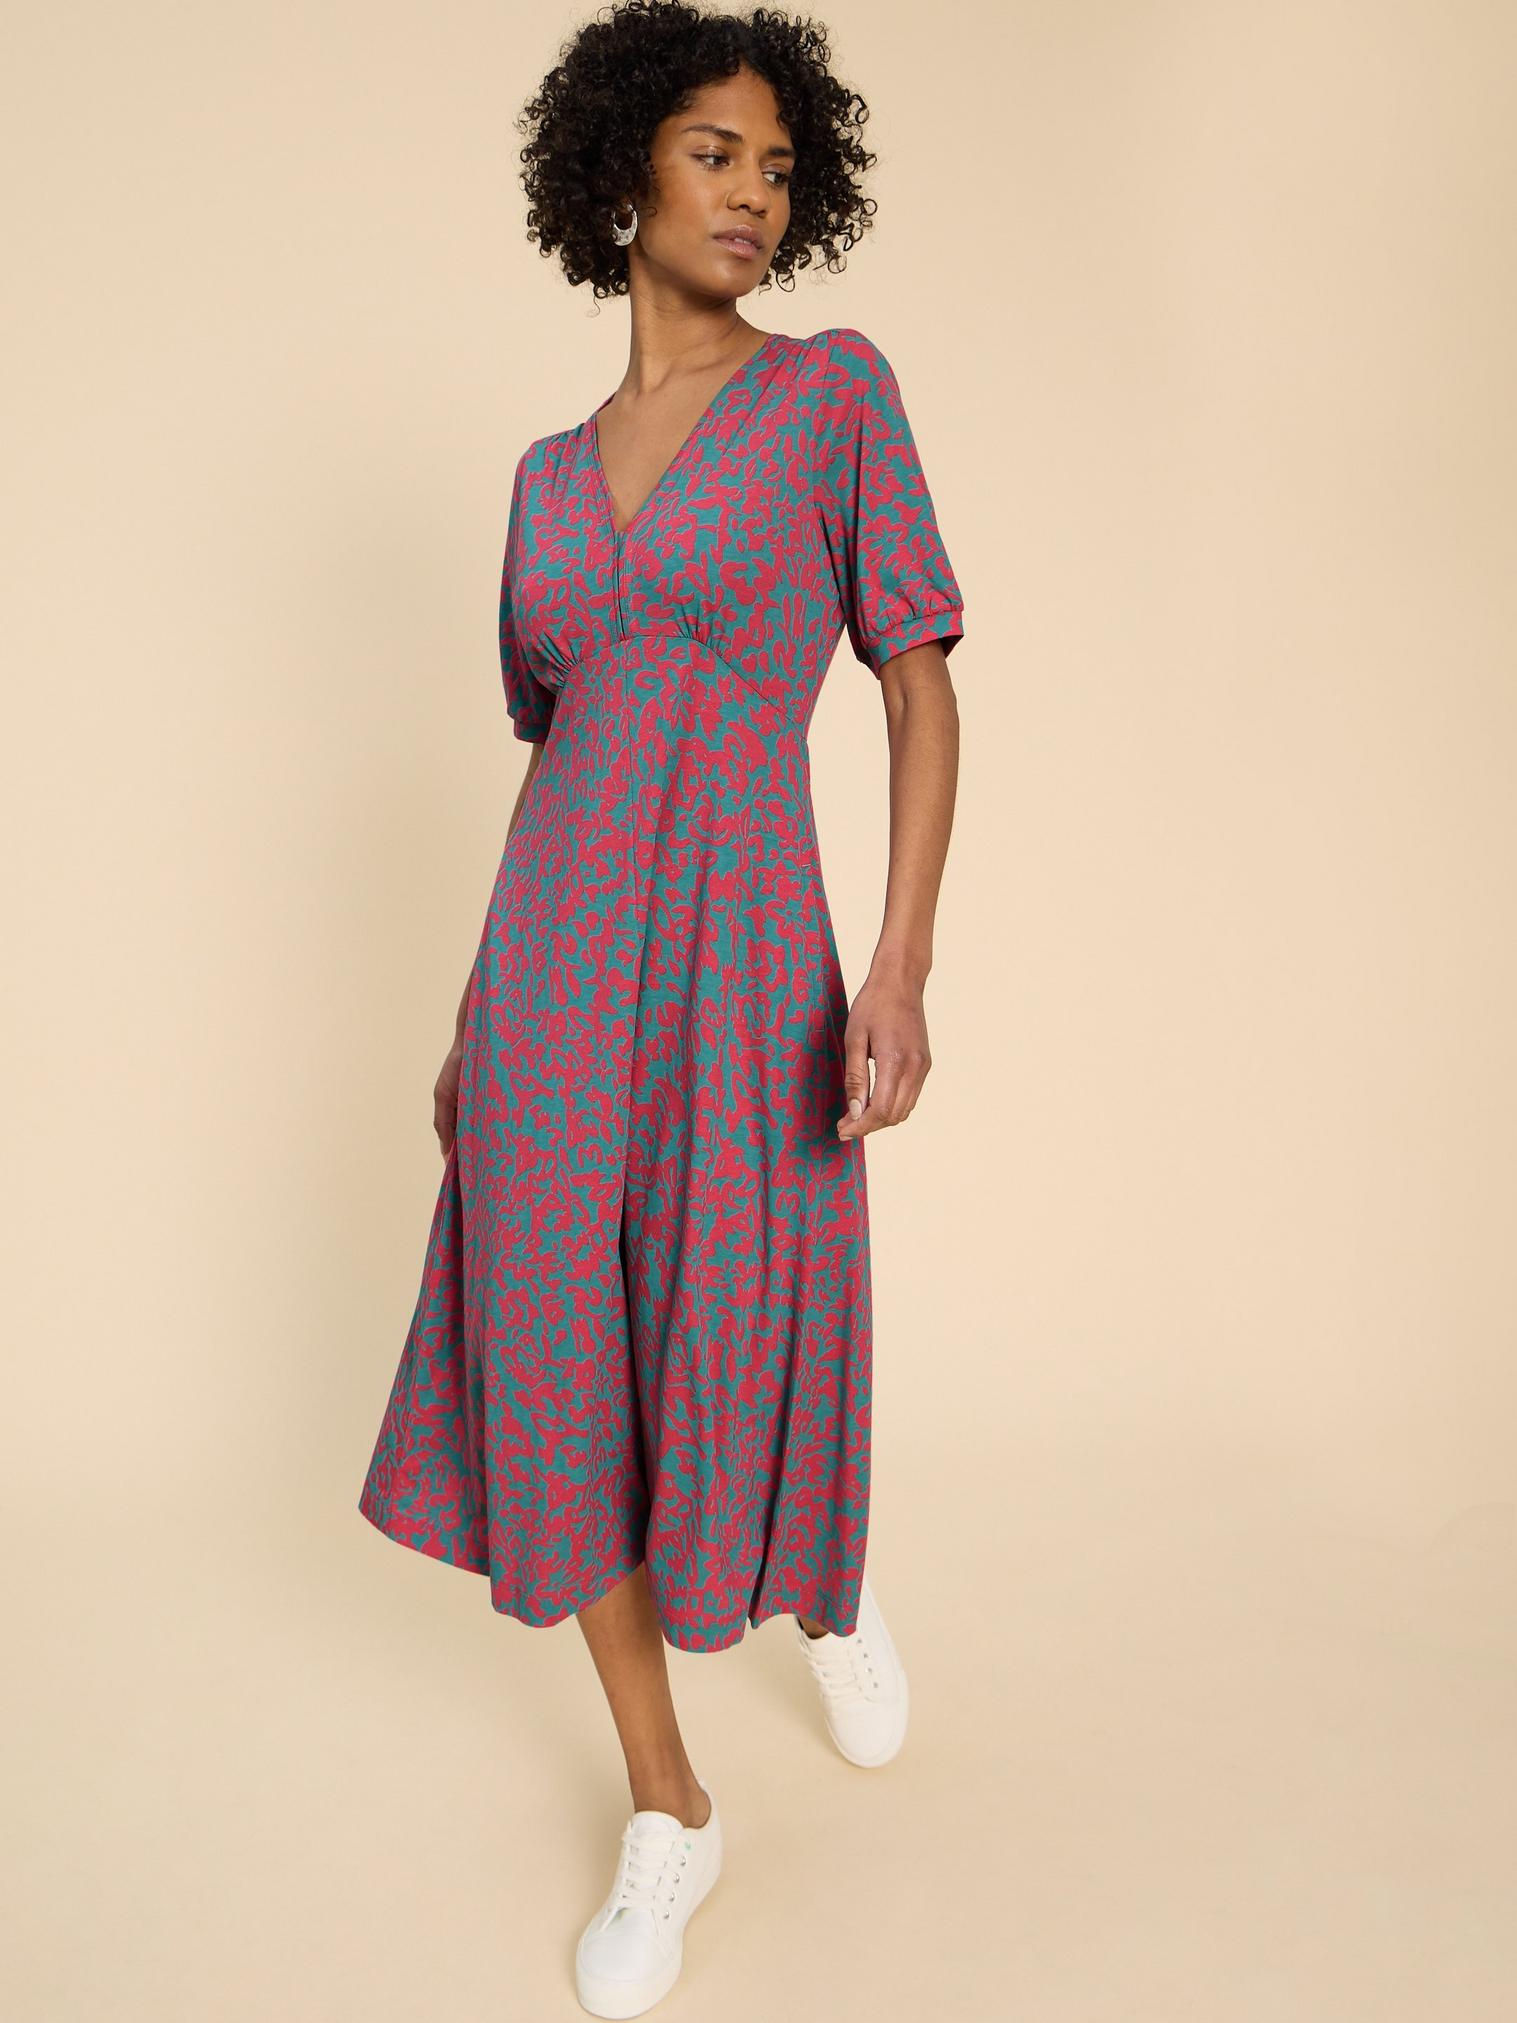 Megan Jersey Printed Dress in PINK PR - MODEL DETAIL